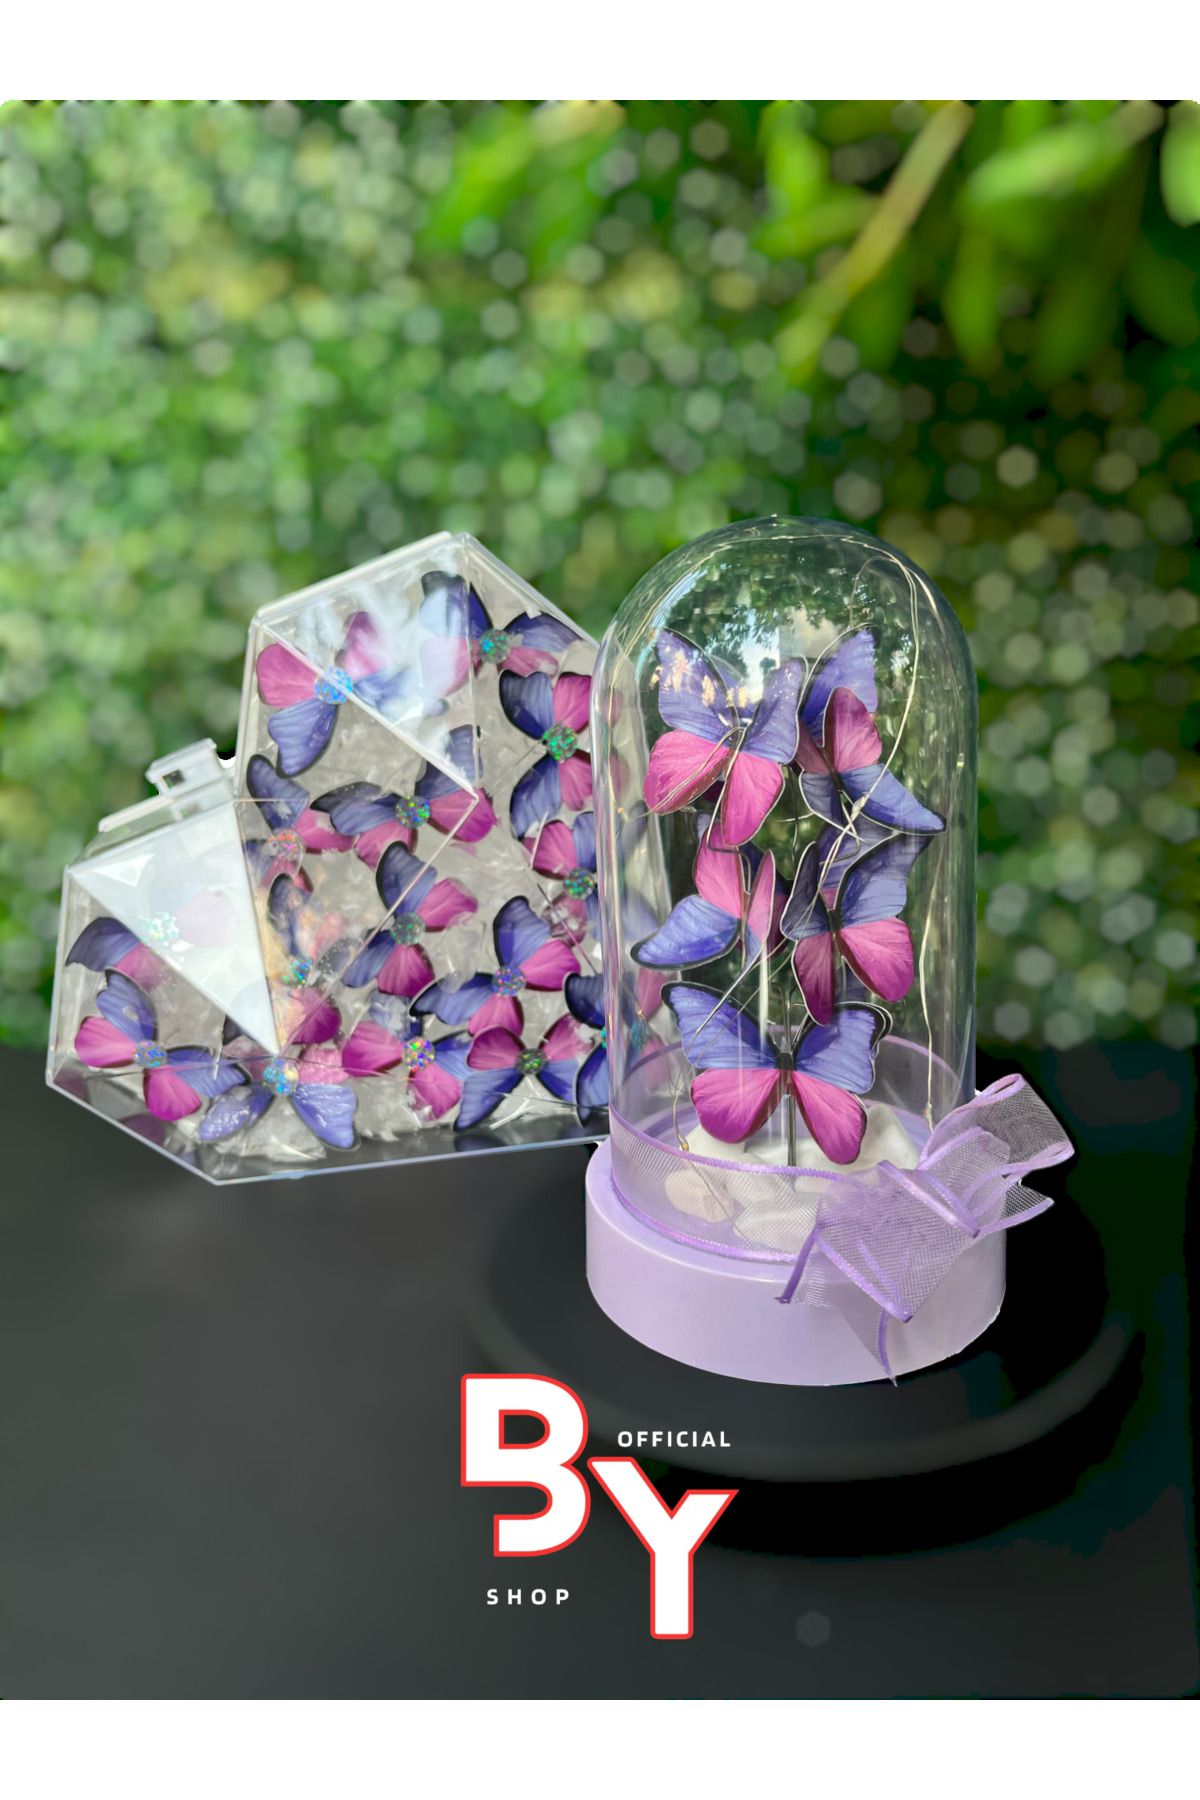 BYSHOPPİNG RGB Peri Led Işıklı Kalpli Kelebek Kutusu Ve Kelebek Fanusu Hediyelik Kalp Kutu - Işıklı Kelebekler